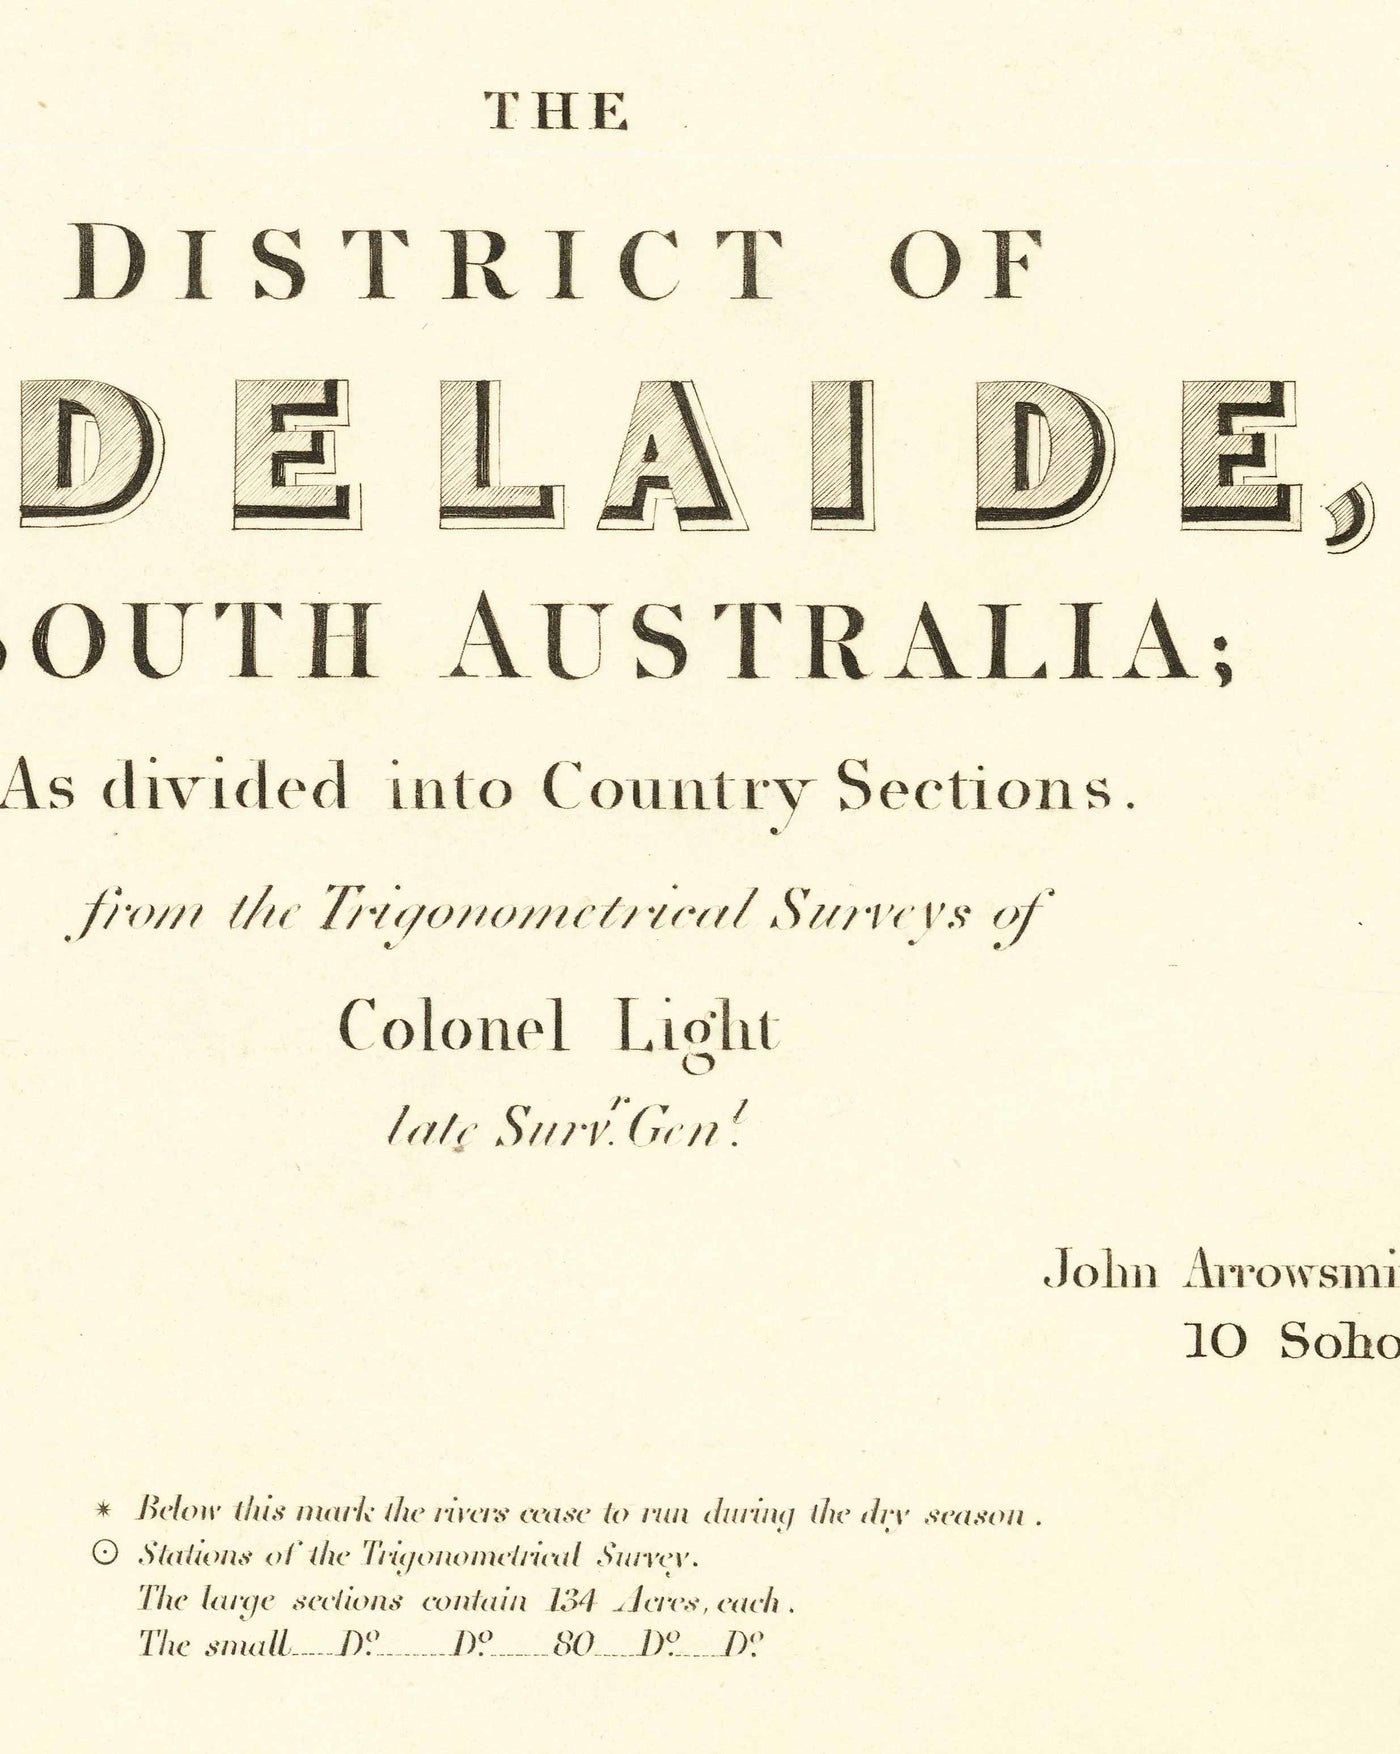 Alte Karte von Adelaide, South Australia von John Arrowsmith, 1839 - Brighton, Port, Norwood, Glenelg Beach